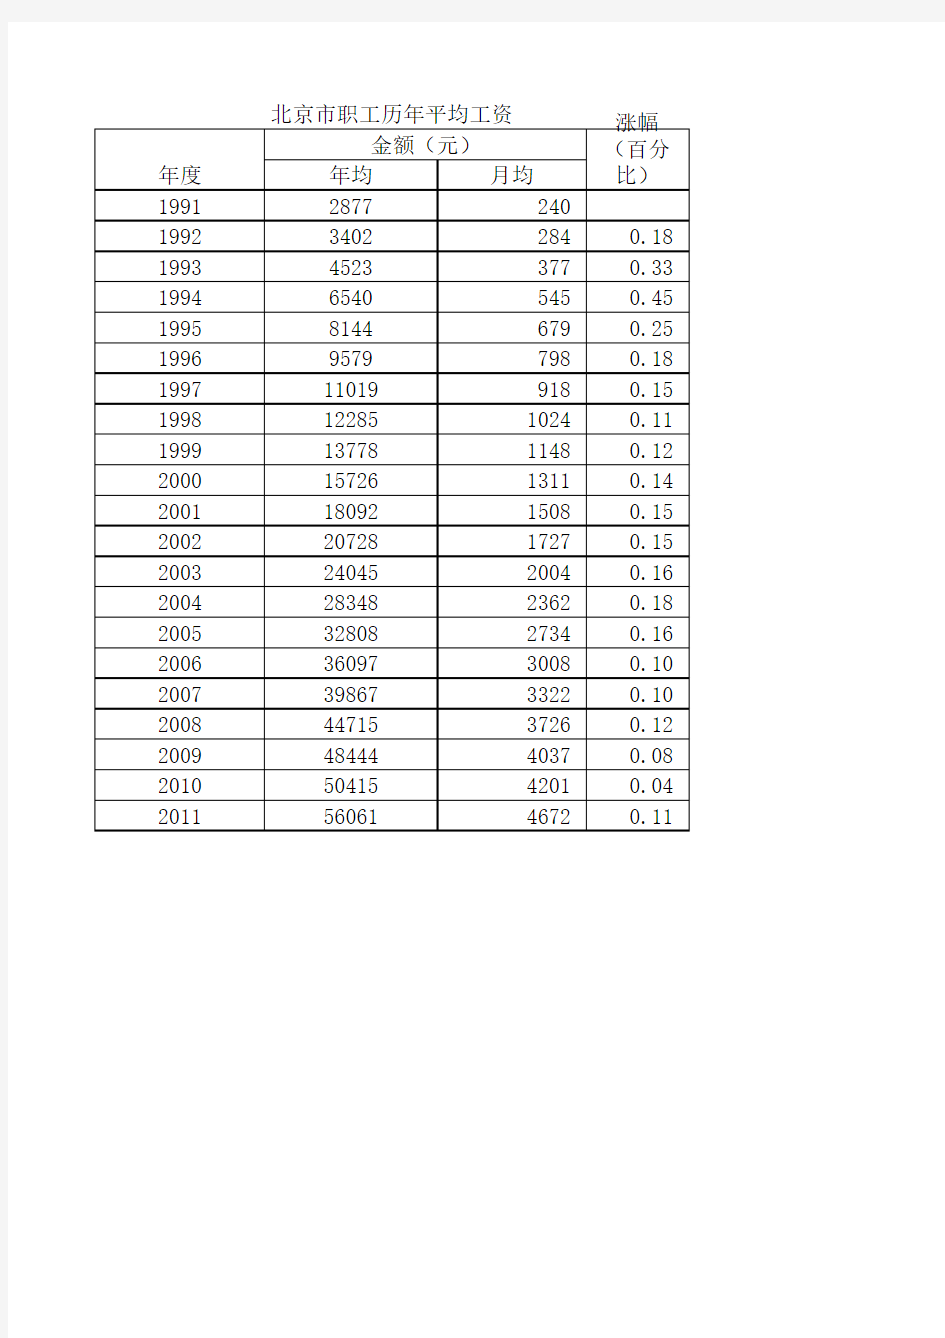 1991-2011北京历年平均工资及涨幅